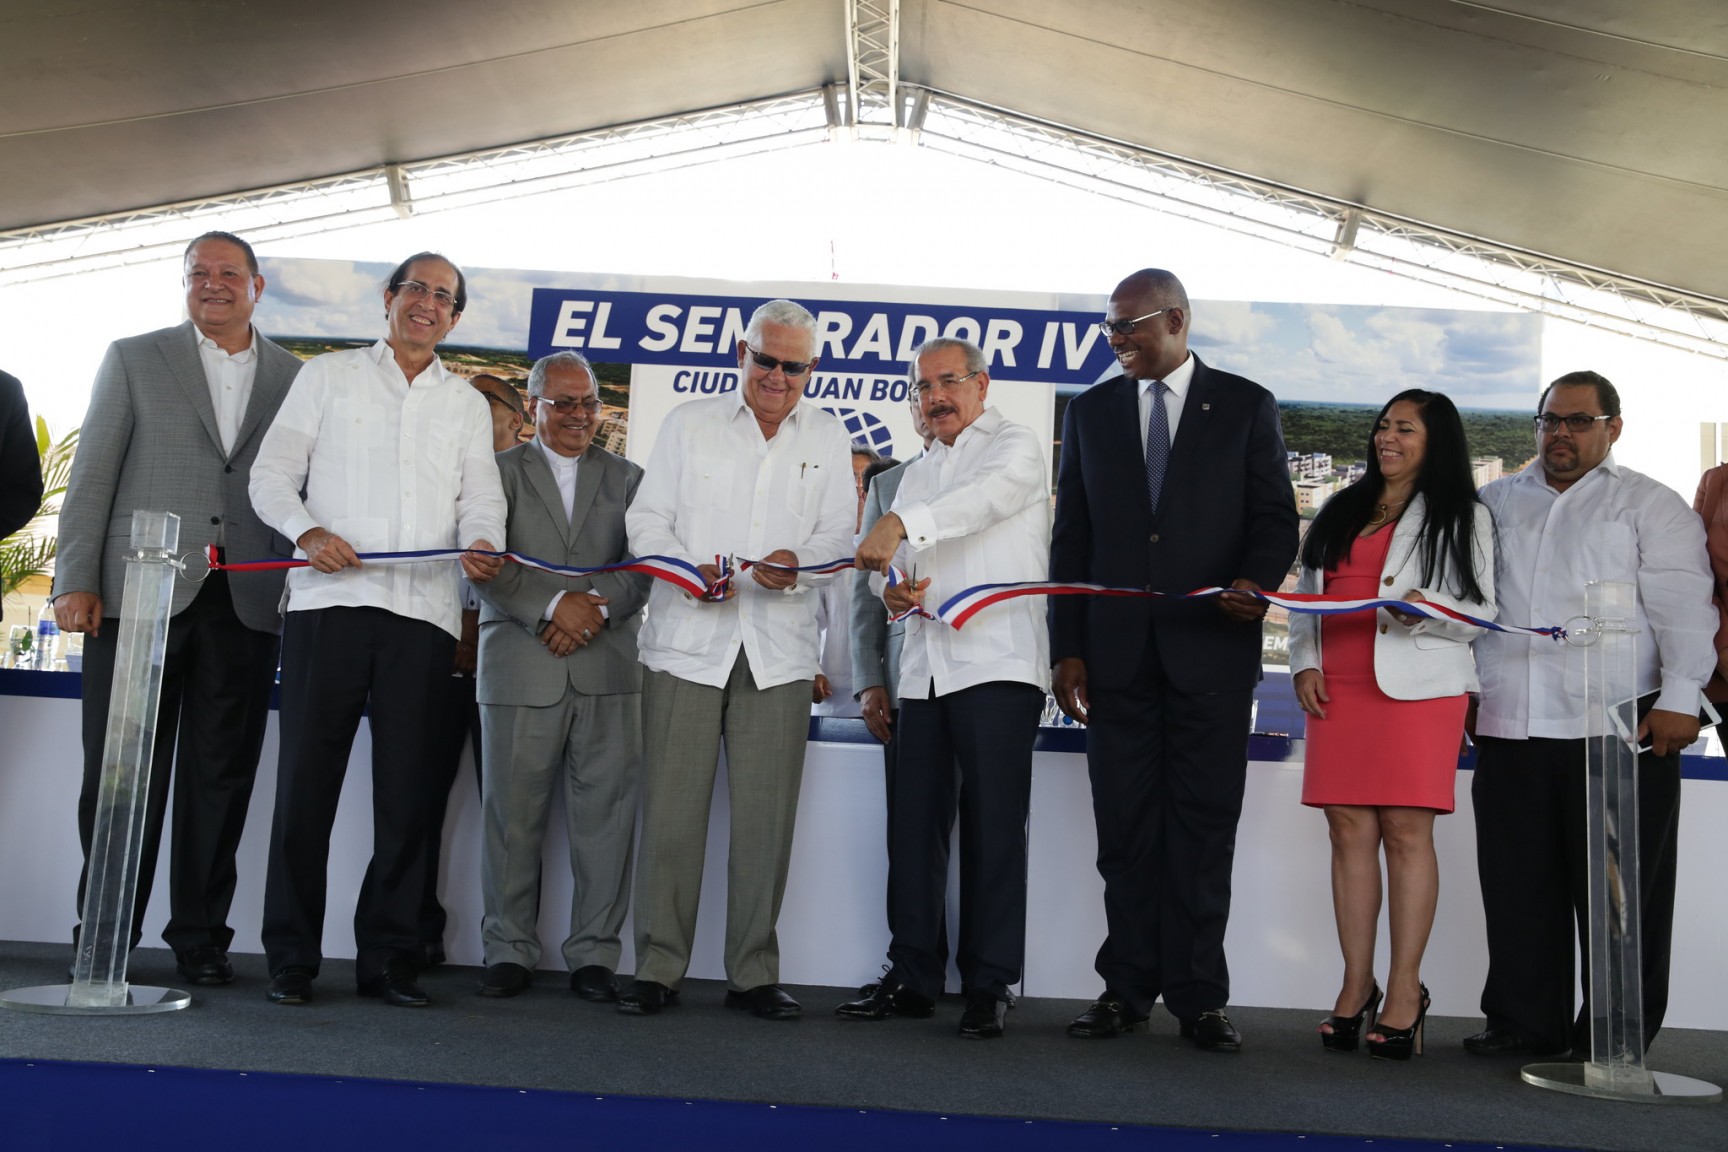 REPÚBLICA DOMINICANA: El Sembrador IV ofrece 464 apartamentos en Ciudad Juan Bosch. Danilo Medina asiste al acto